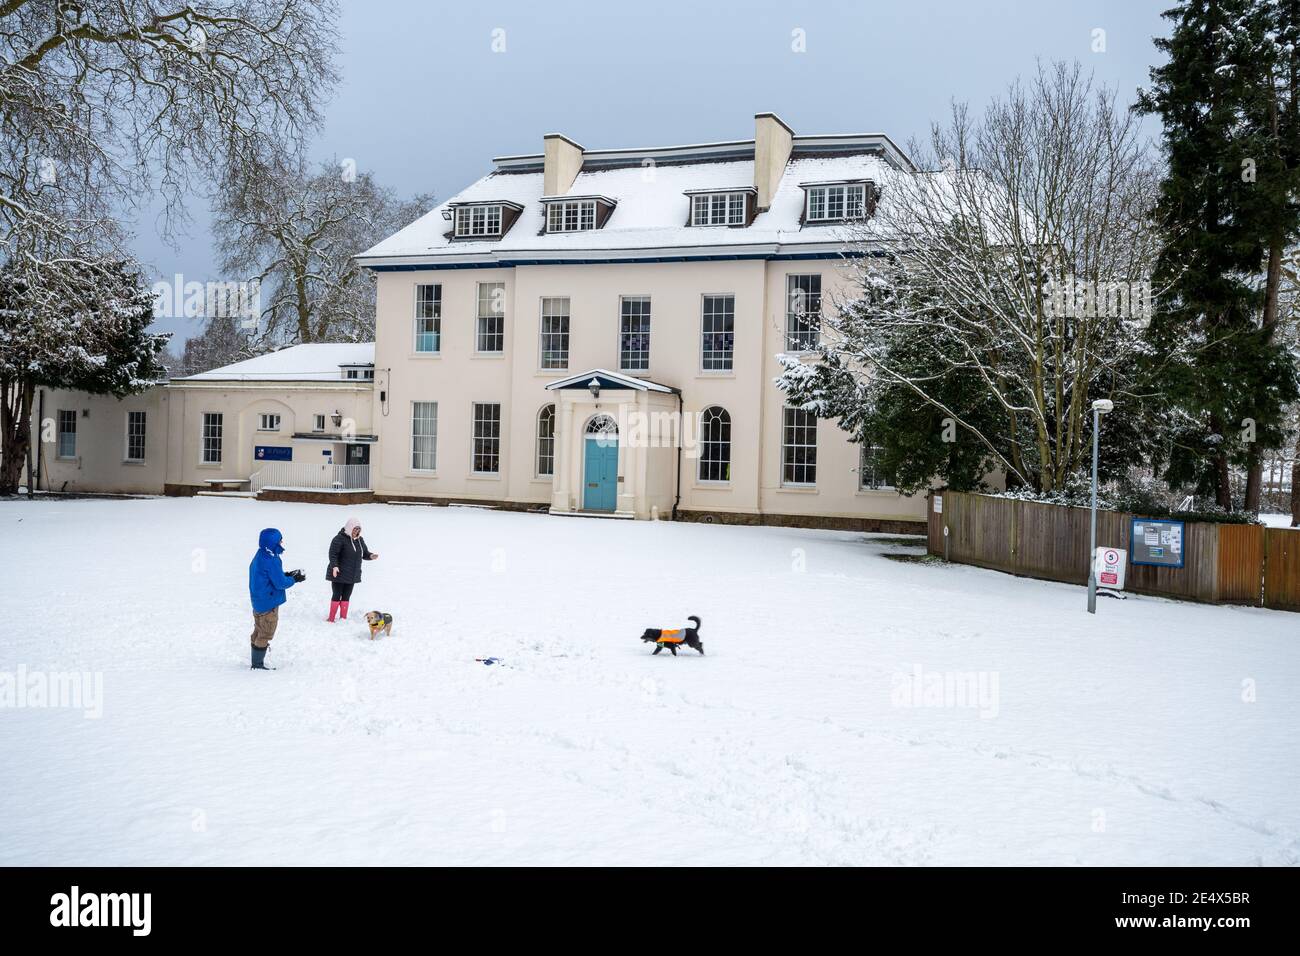 St Peter's School, früher Farnborough Place, ein altes Herrenhaus, im Januar oder Winter mit Schnee, und Menschen mit Hunden, Farnborough, Hampshire, Großbritannien Stockfoto